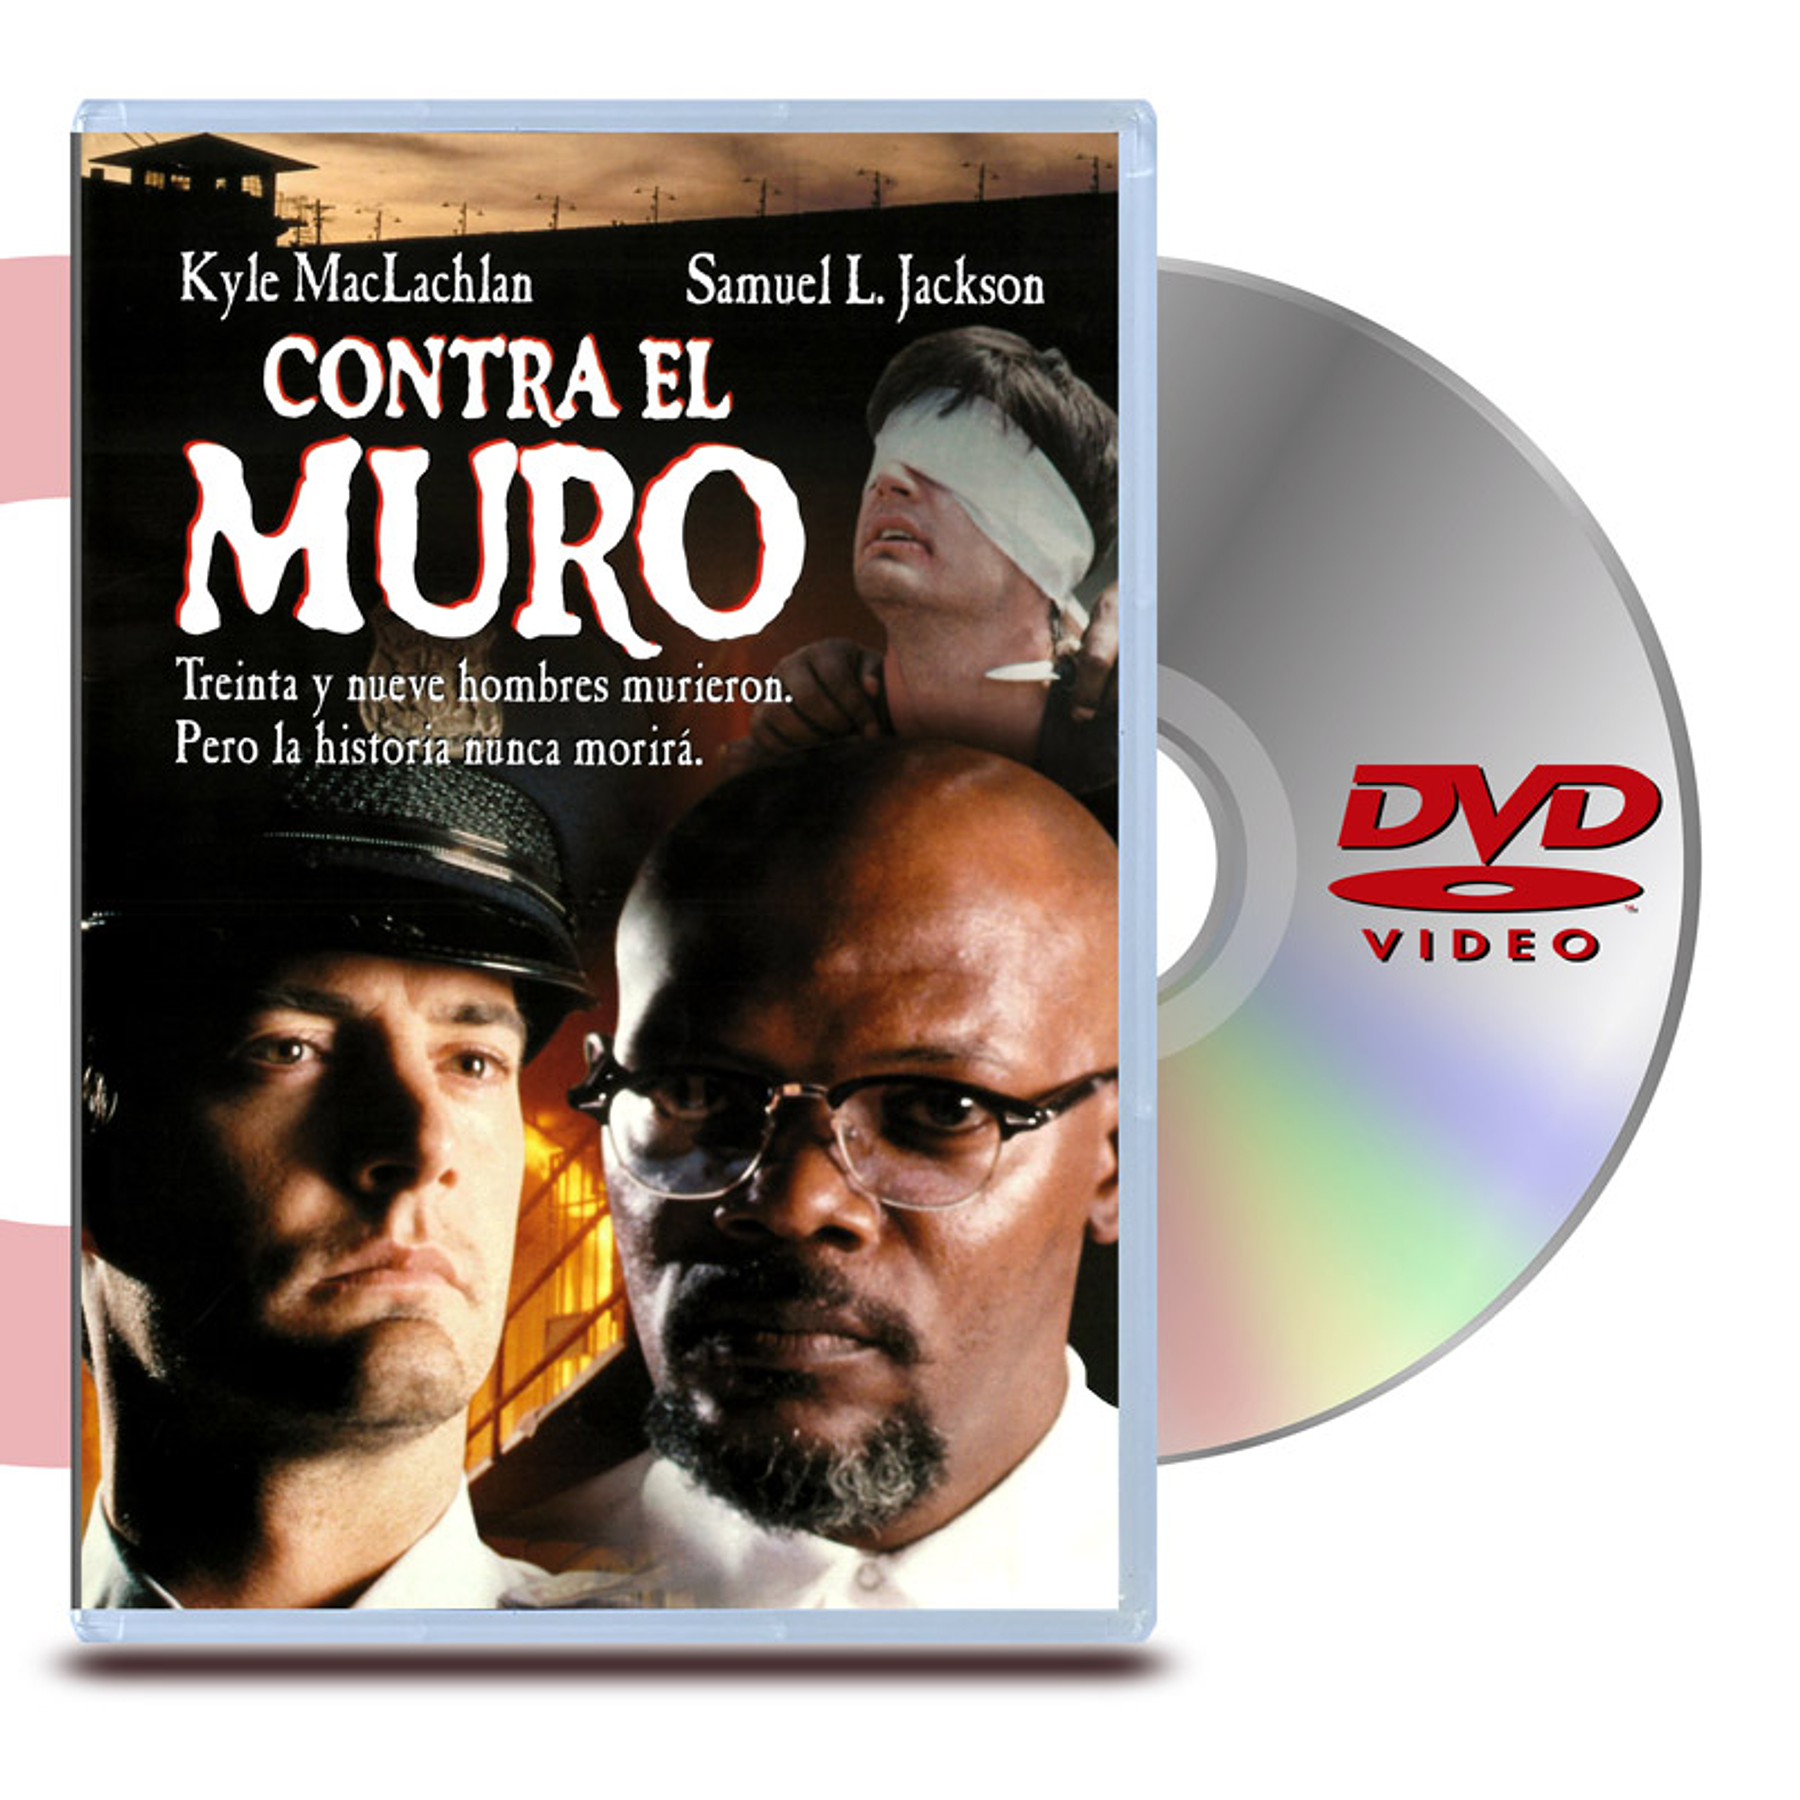 DVD CONTRA EL MURO